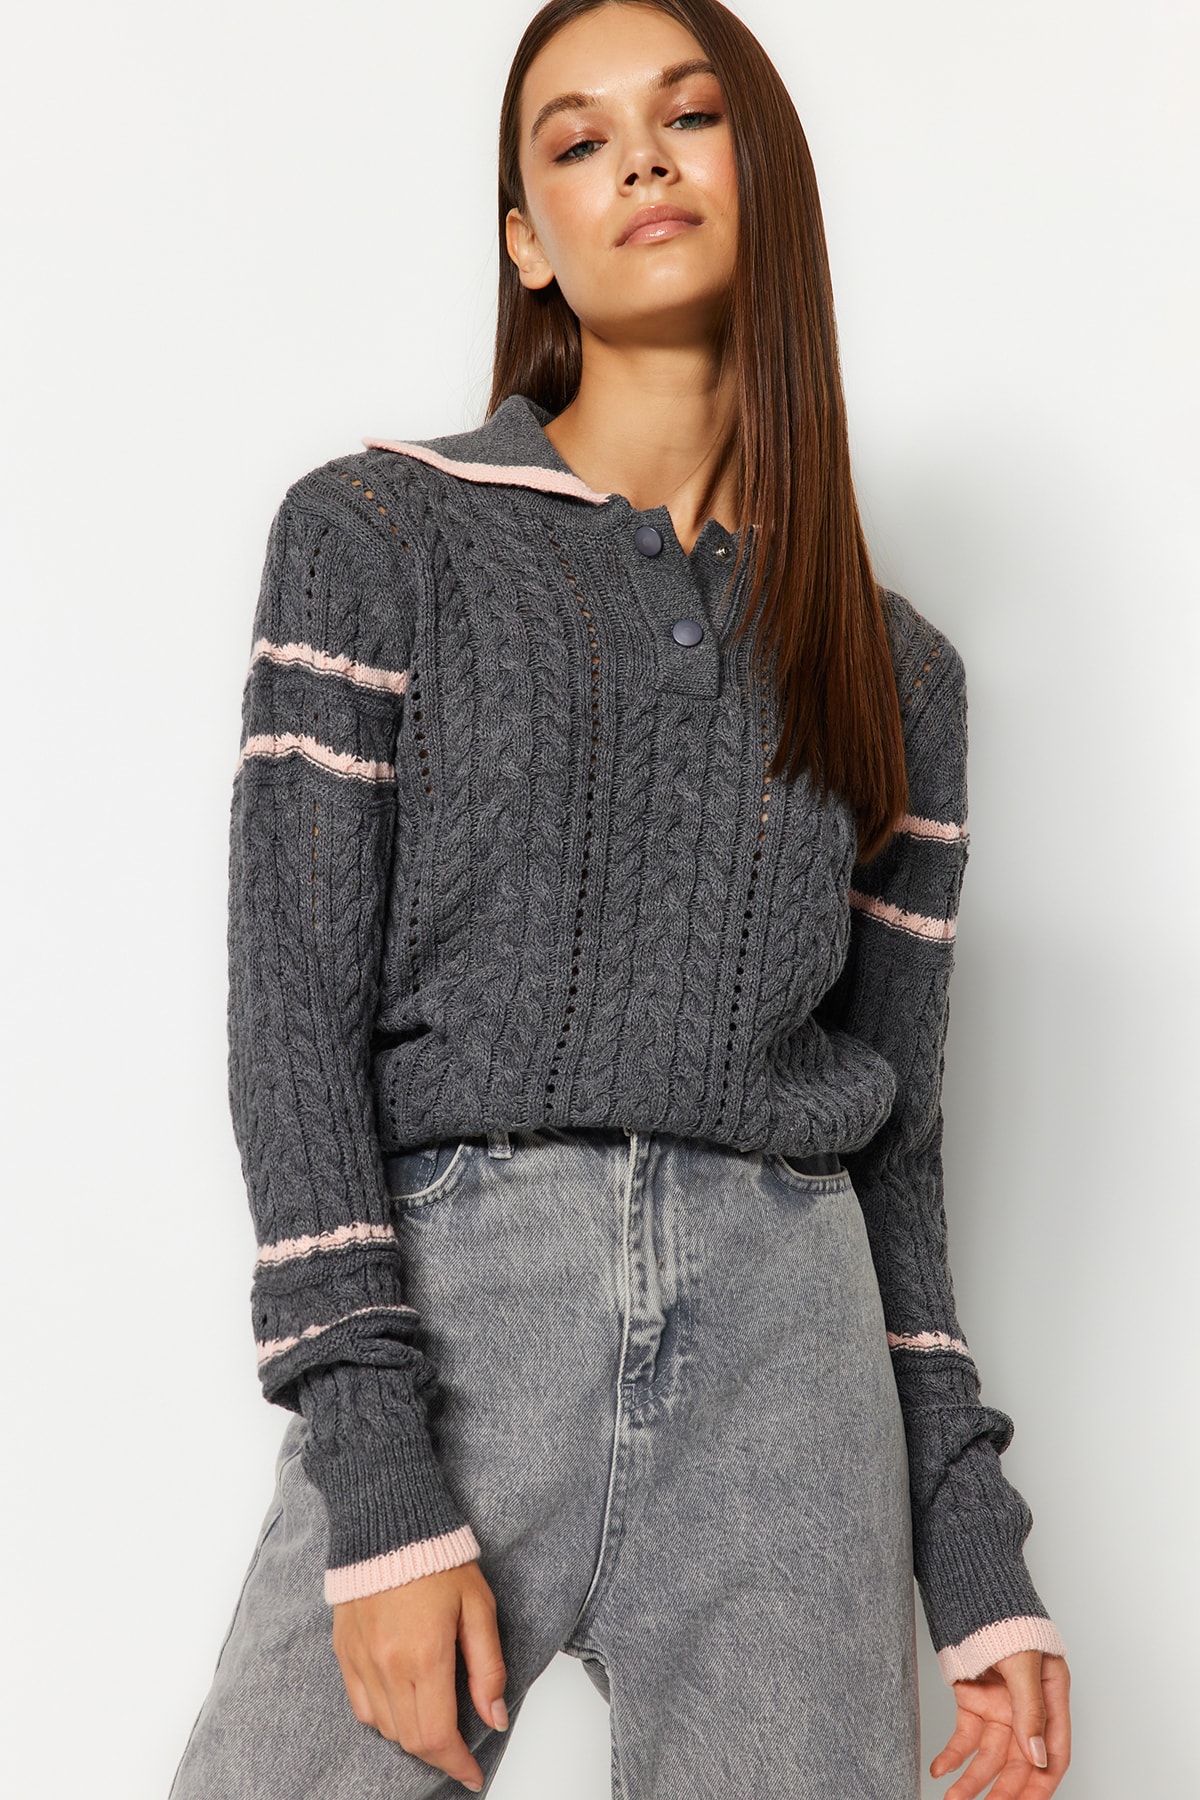 Trendyol Gray Pool Neck Knitwear Sweater